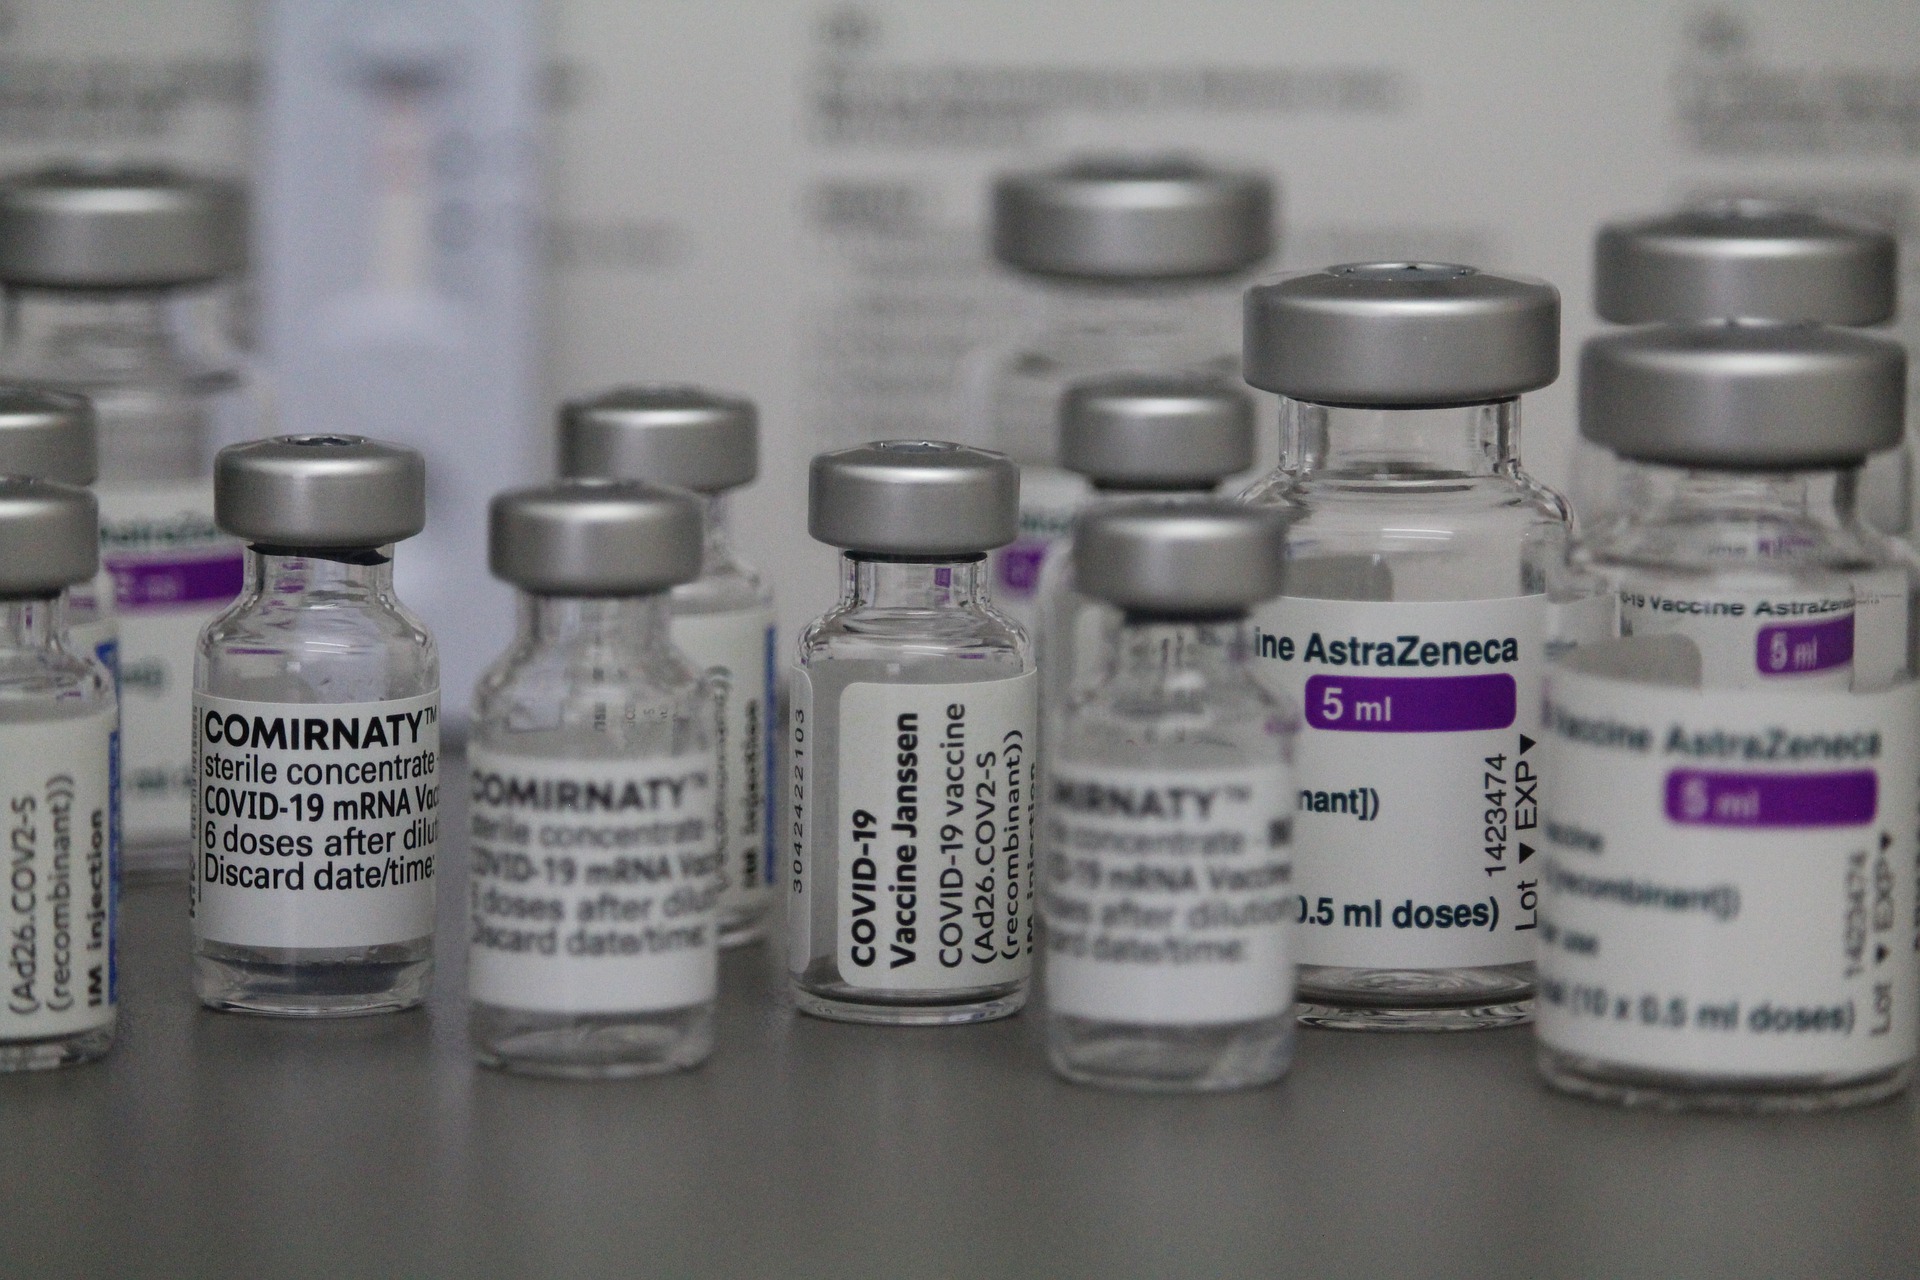 Terceira dose da vacina AstraZeneca aumenta significativamente anticorpos contra a variante Ômicron, diz estudo